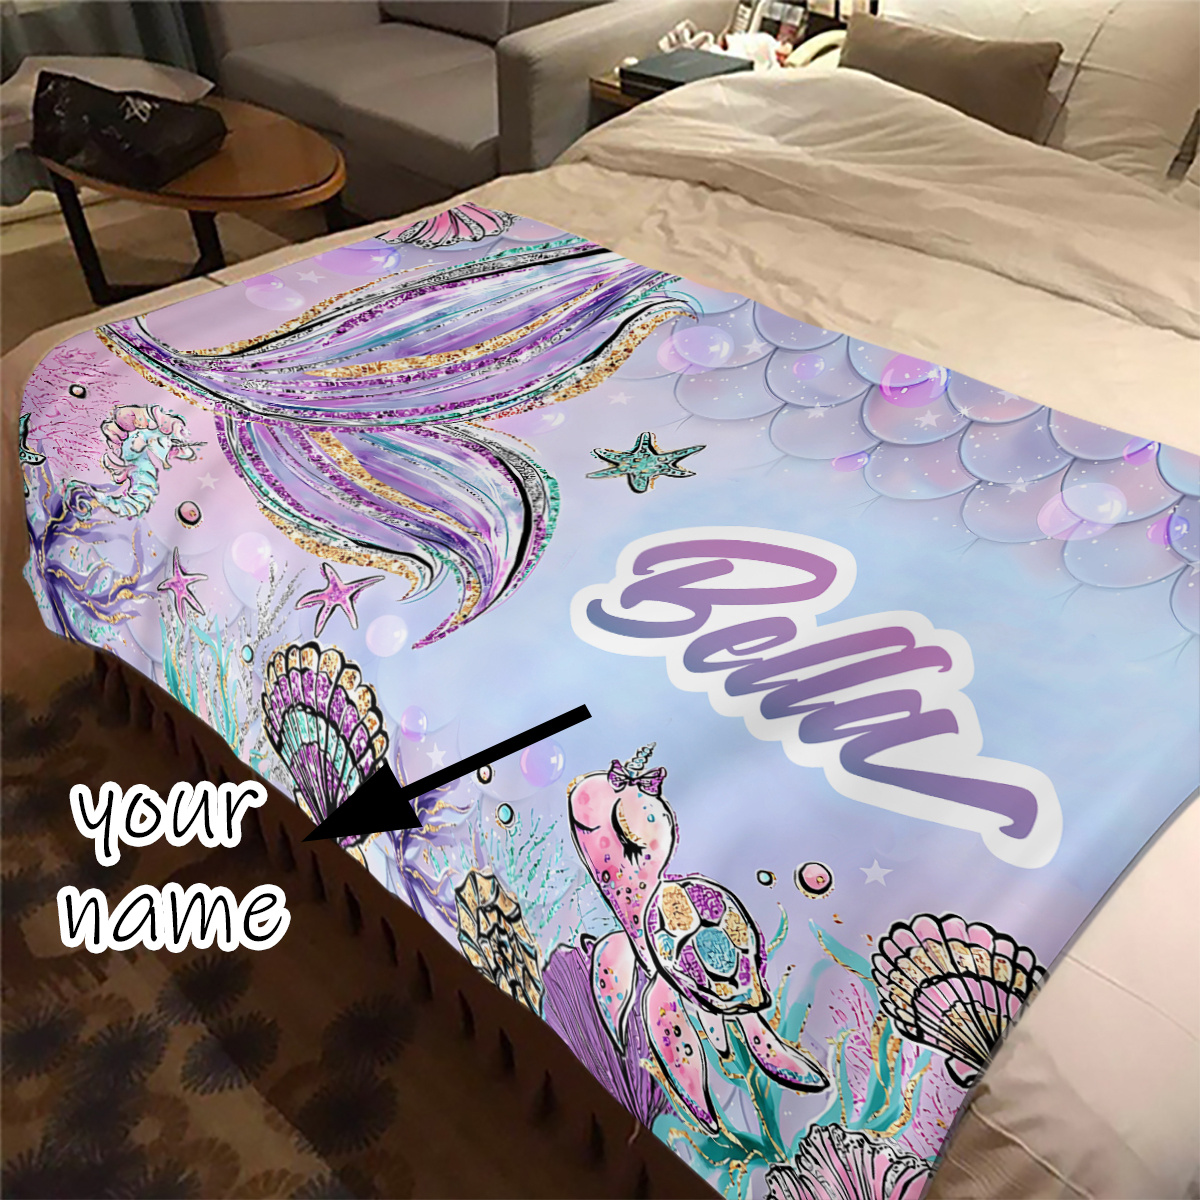 

1pc Custom Name Blanket, Purple Cartoon Deep Sea Mermaid Turtle Pattern Blanket, For Birthday Gift Holiday Gift, Soft 4 Seasons Flannel Outdoor Blanket